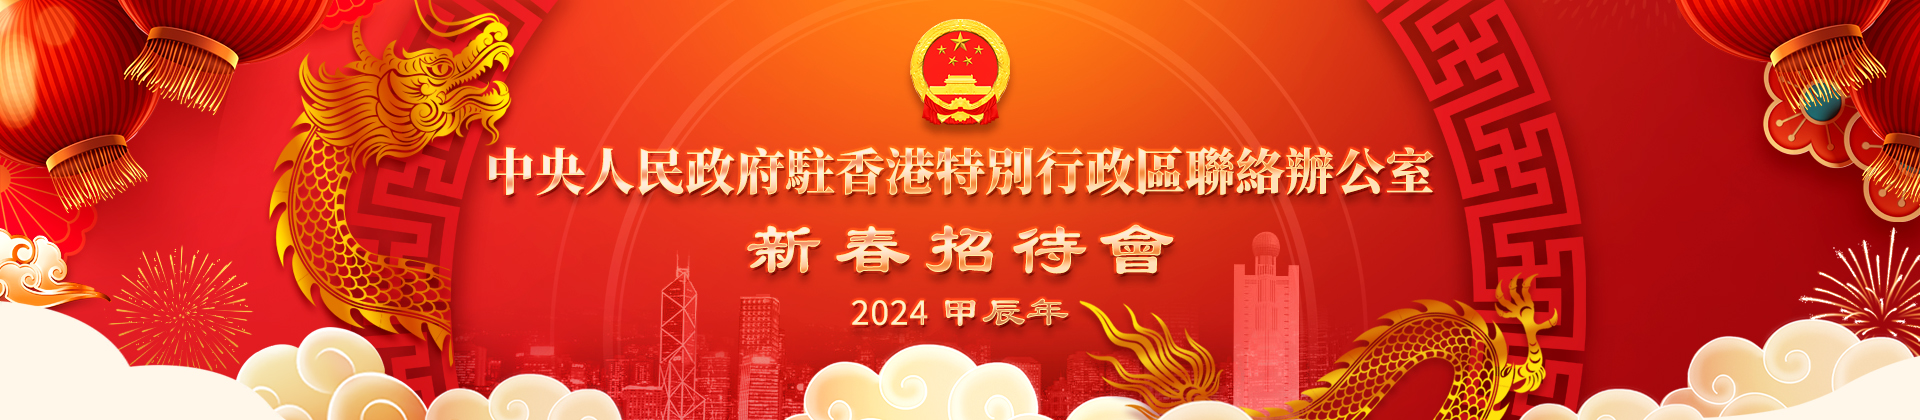 中央政府駐港聯絡辦舉行2024年新春招待會PC banner